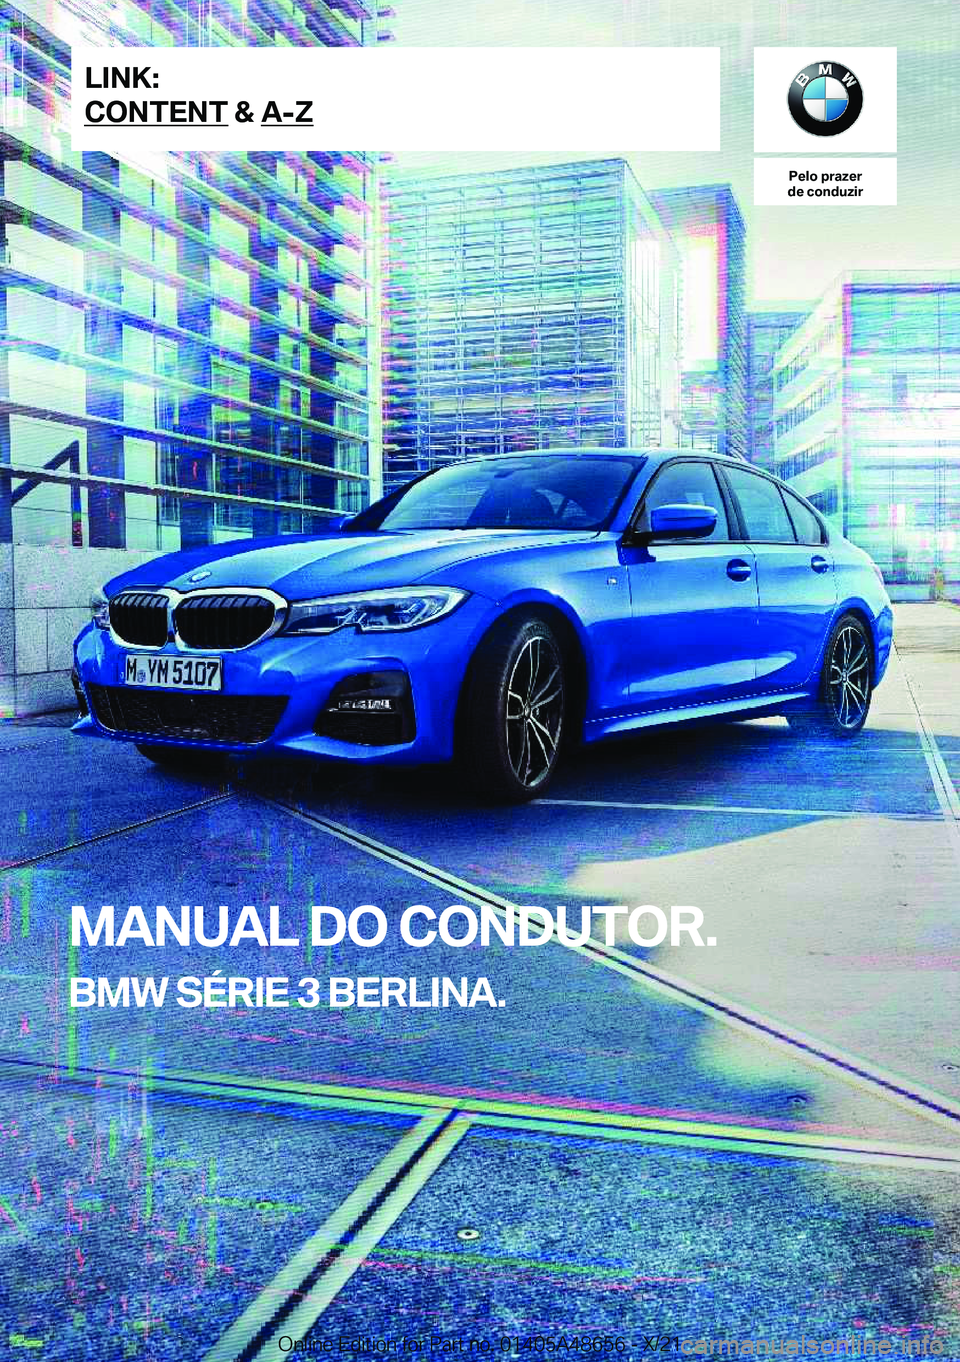 BMW 3 SERIES 2022  Manual do condutor (in Portuguese) �P�e�l�o��p�r�a�z�e�r
�d�e��c�o�n�d�u�z�i�r
�M�A�N�U�A�L��D�O��C�O�N�D�U�T�O�R�.
�B�M�W��S�É�R�I�E��3��B�E�R�L�I�N�A�.�L�I�N�K�:
�C�O�N�T�E�N�T��&��A�-�Z�O�n�l�i�n�e��E�d�i�t�i�o�n��f�o�r�